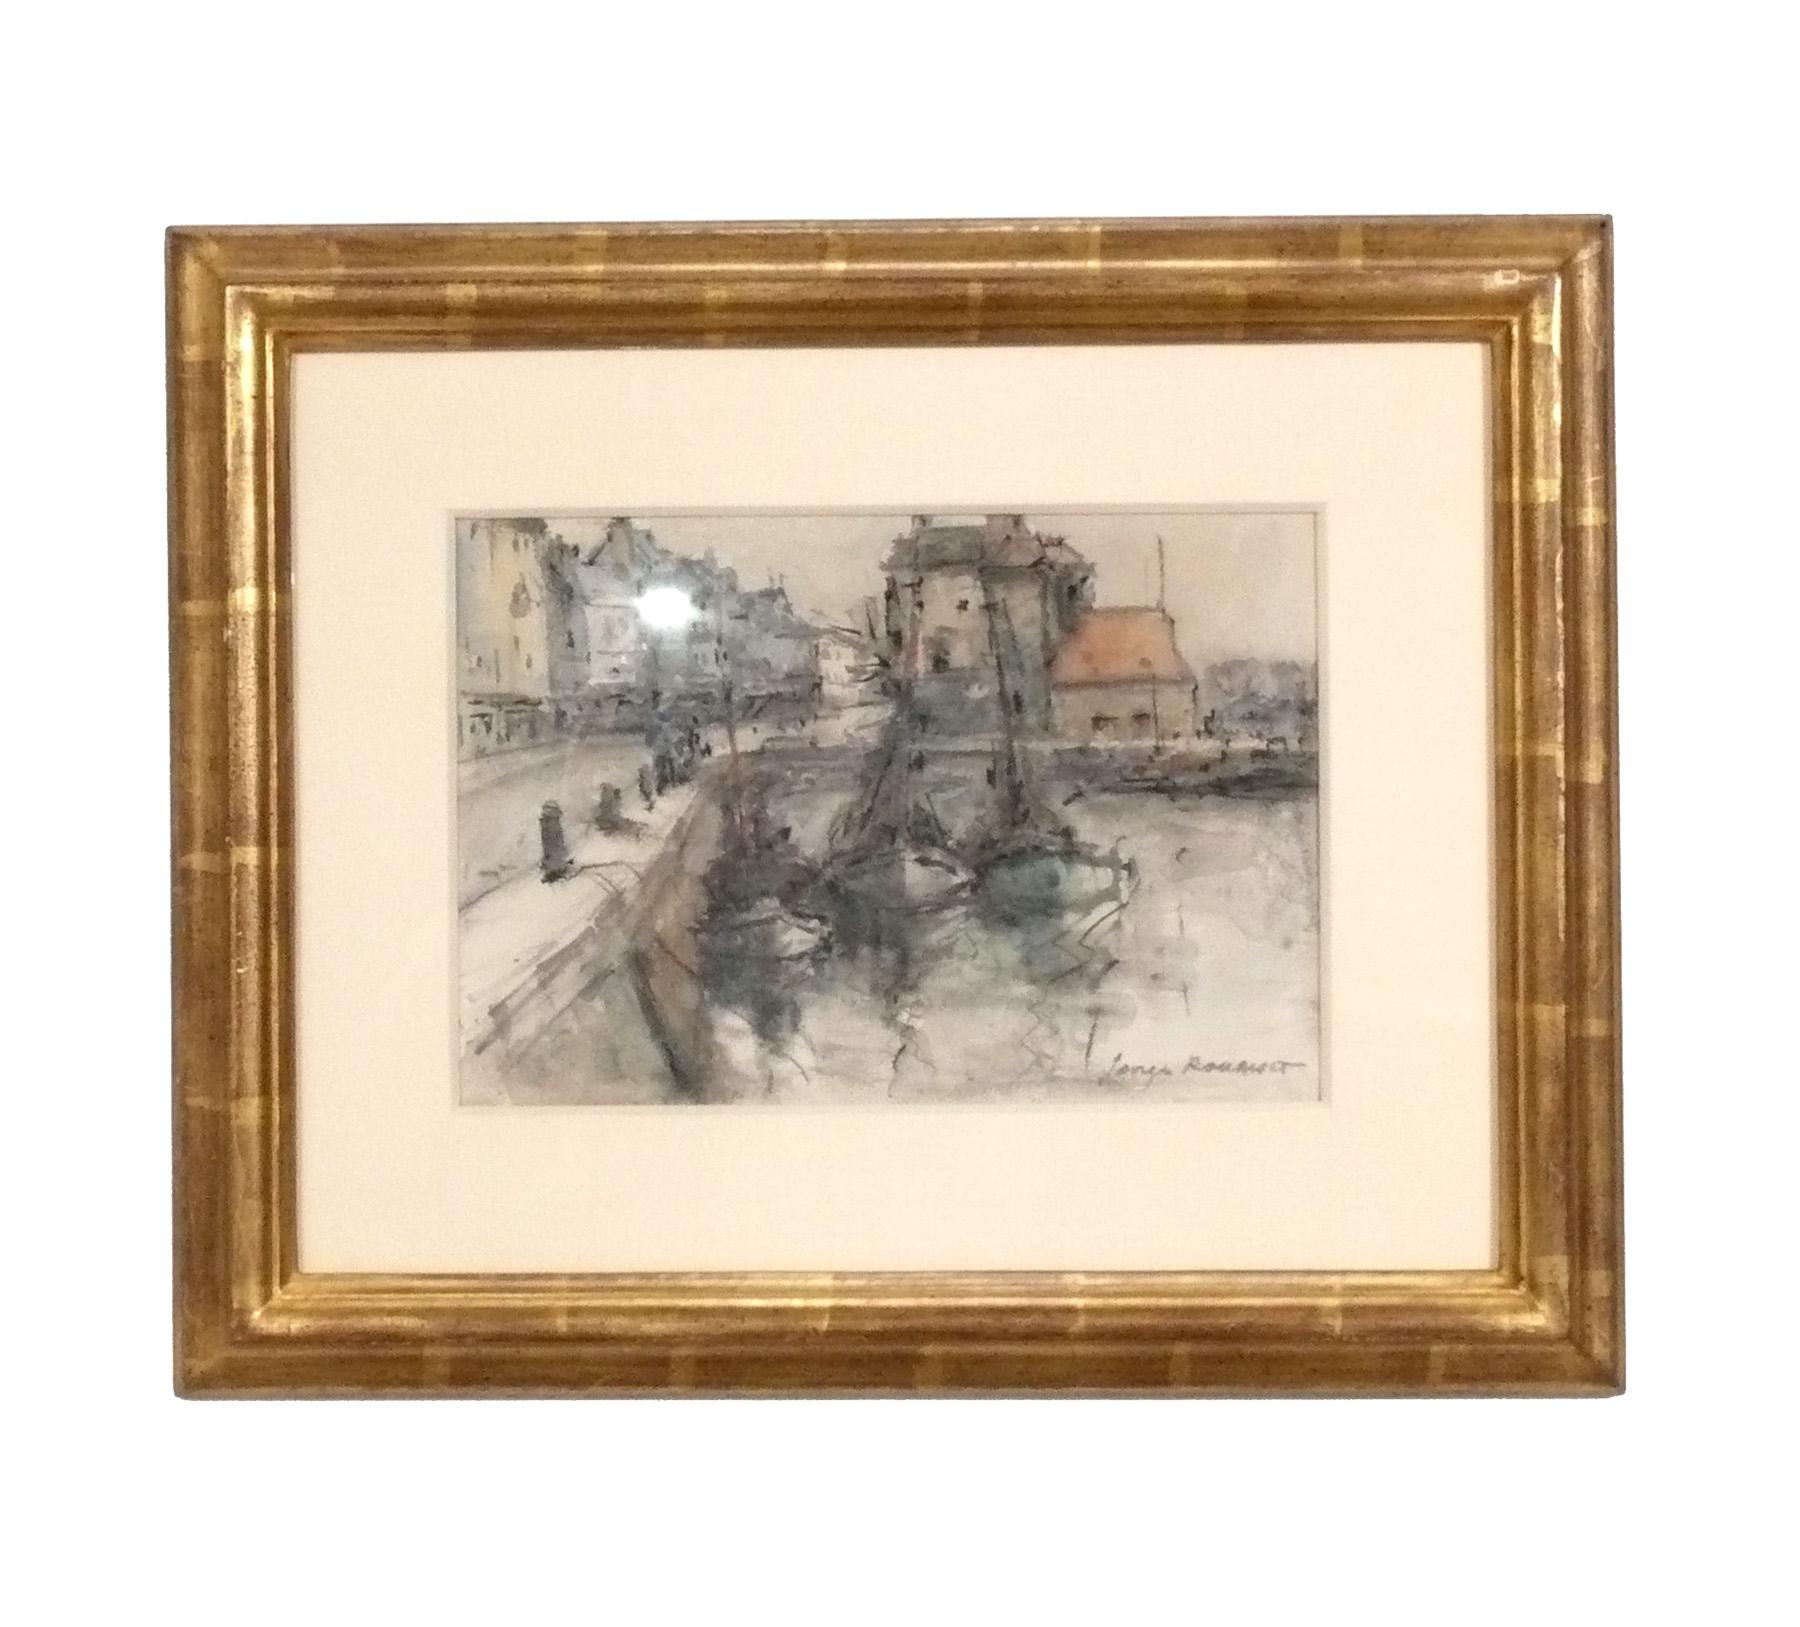 Vier Landschaftsaquarelle von George Rouault, kürzlich von Lowy Framers, NYC, in Holzrahmen mit 22 Karat Blattgold gerahmt. Die Gemälde sind französisch, ca. 1960er Jahre. Der Preis liegt bei 800 Dollar pro Stück bzw. 2800 Dollar für den Satz von